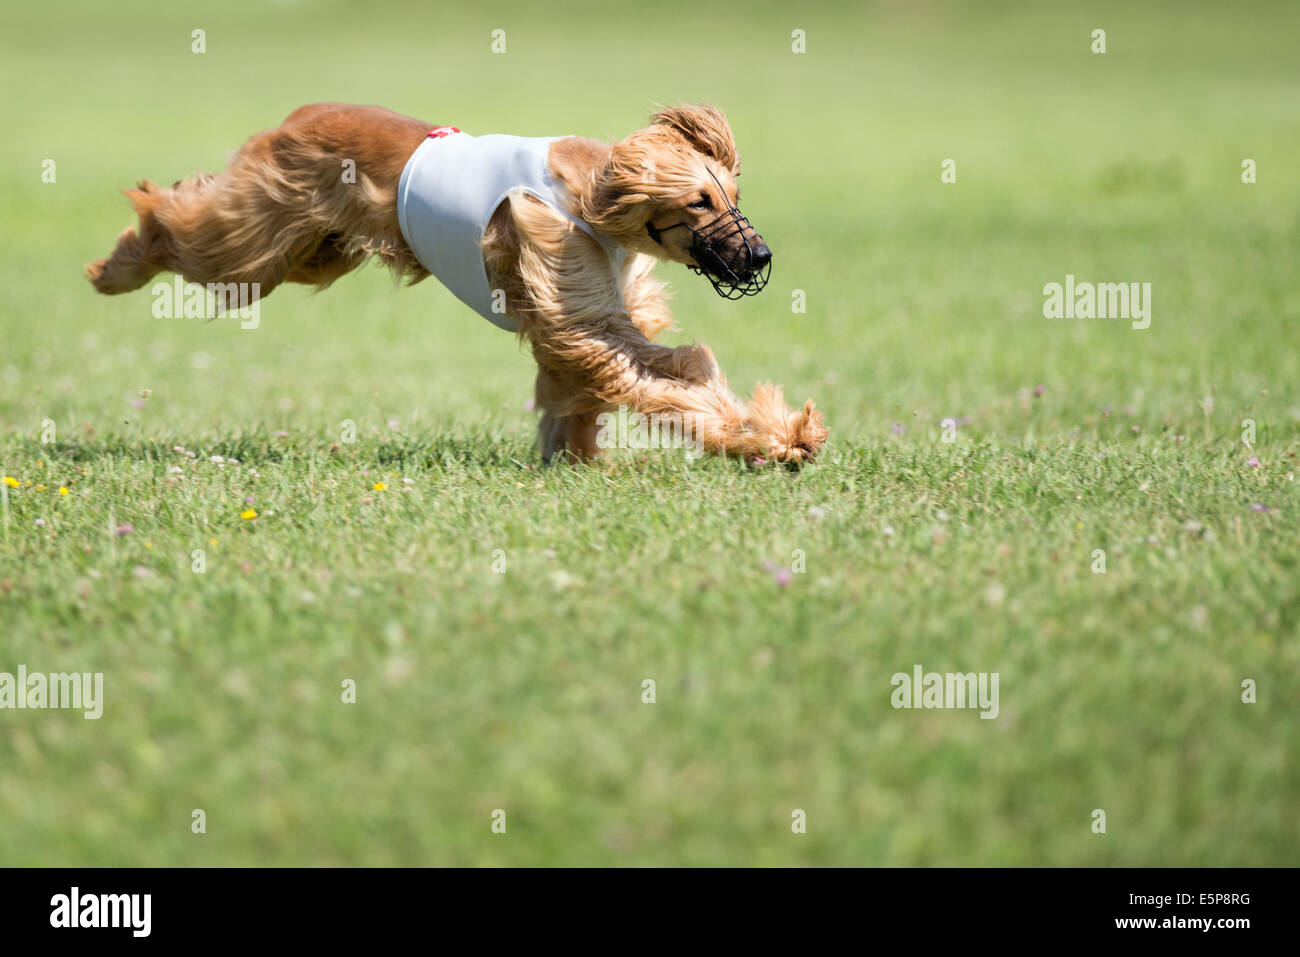 Hund läuft nach dem Köder beim coursing Wettbewerb Stockfoto